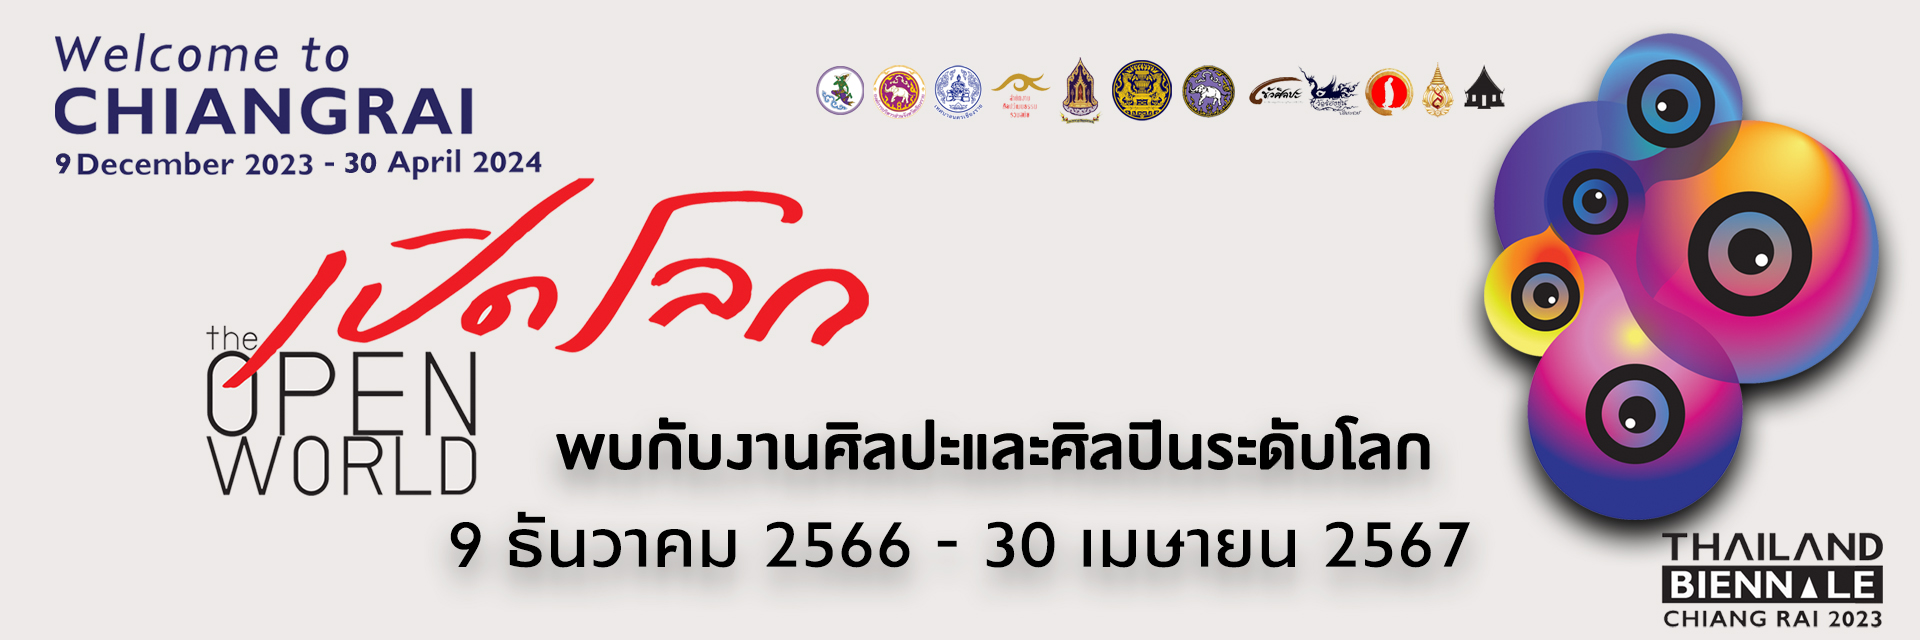 เบียนนาเล่เชียงราย Thailand Biennale, Chiang Rai 2023